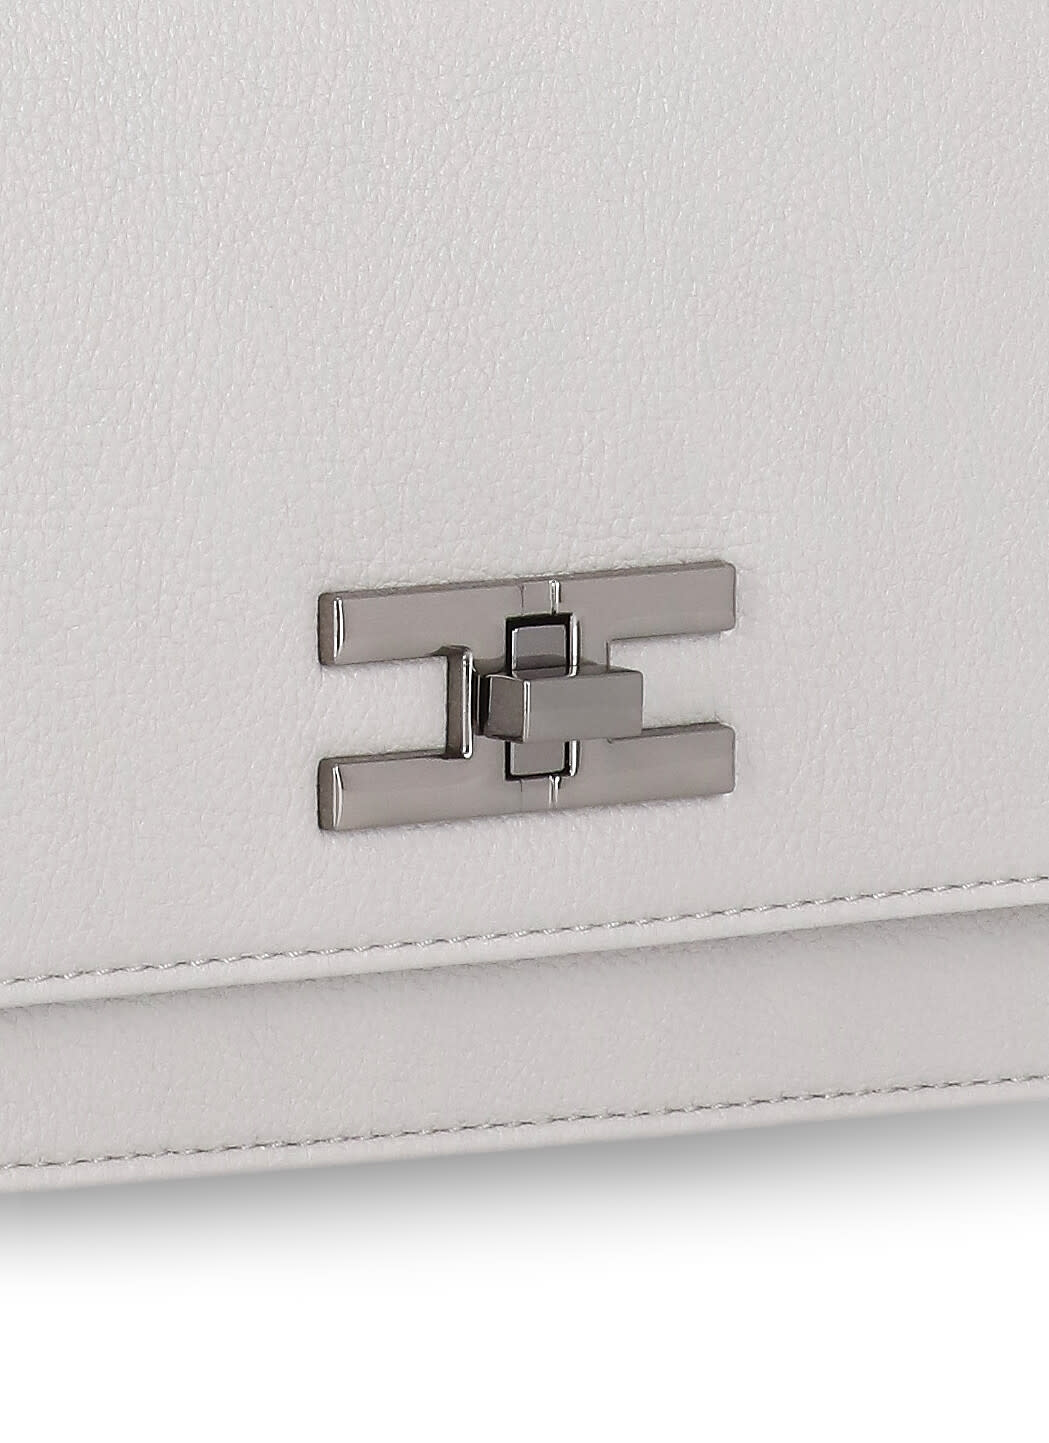 Shop Elisabetta Franchi Shoulder Bag With Logo In Grey